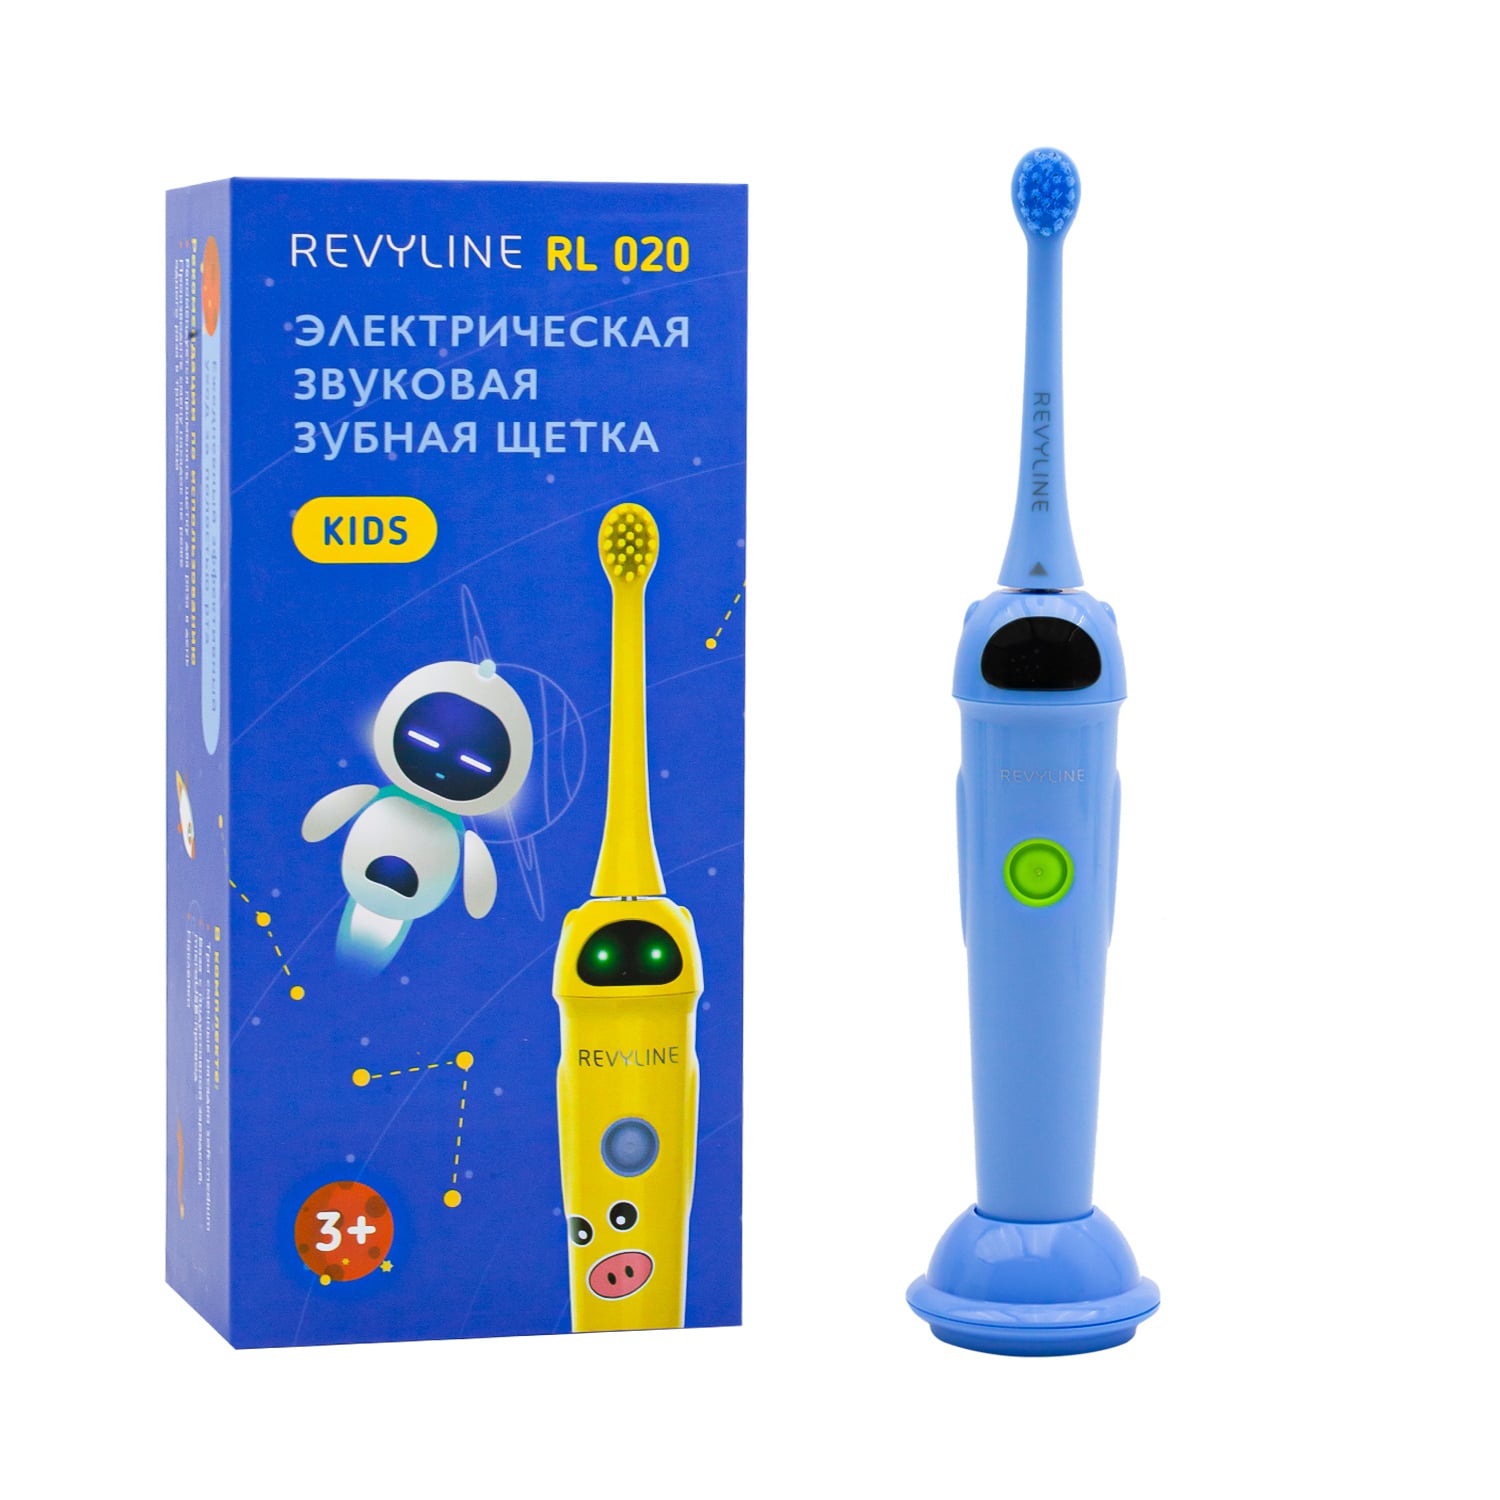 цена REVYLINE Детская электрическая звуковая зубная щетка RL 020 3+, синяя, 1 шт (REVYLINE, Электрические зубные щетки)